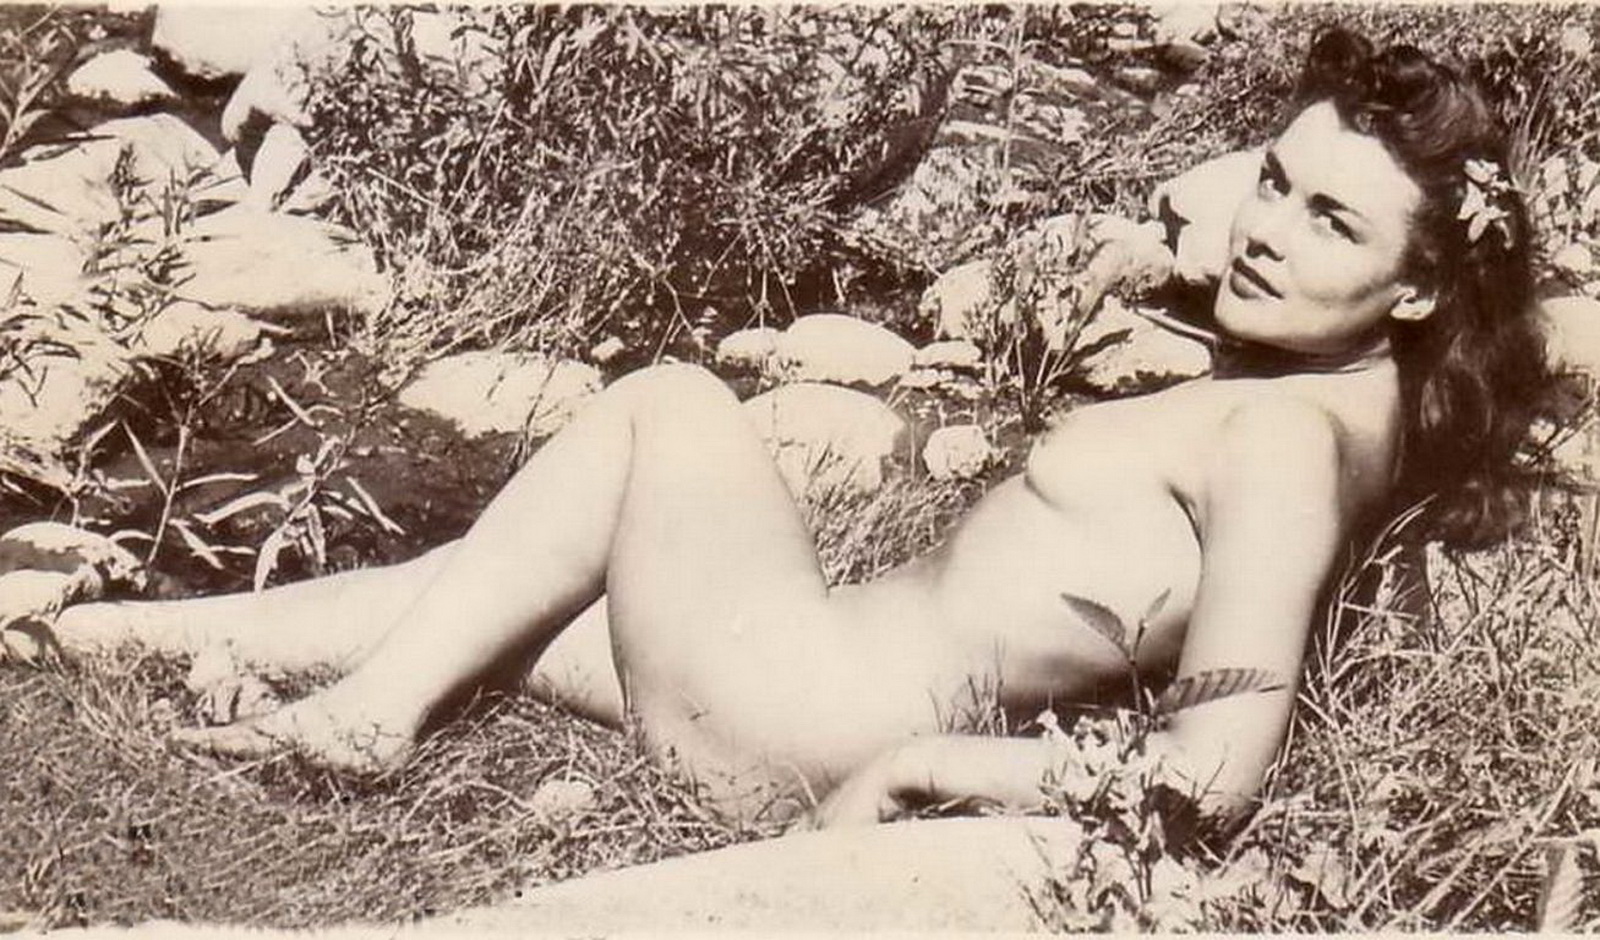 Эротические ретро обои для рабочего стола. обнаженная женщина лежит на траве среди камней